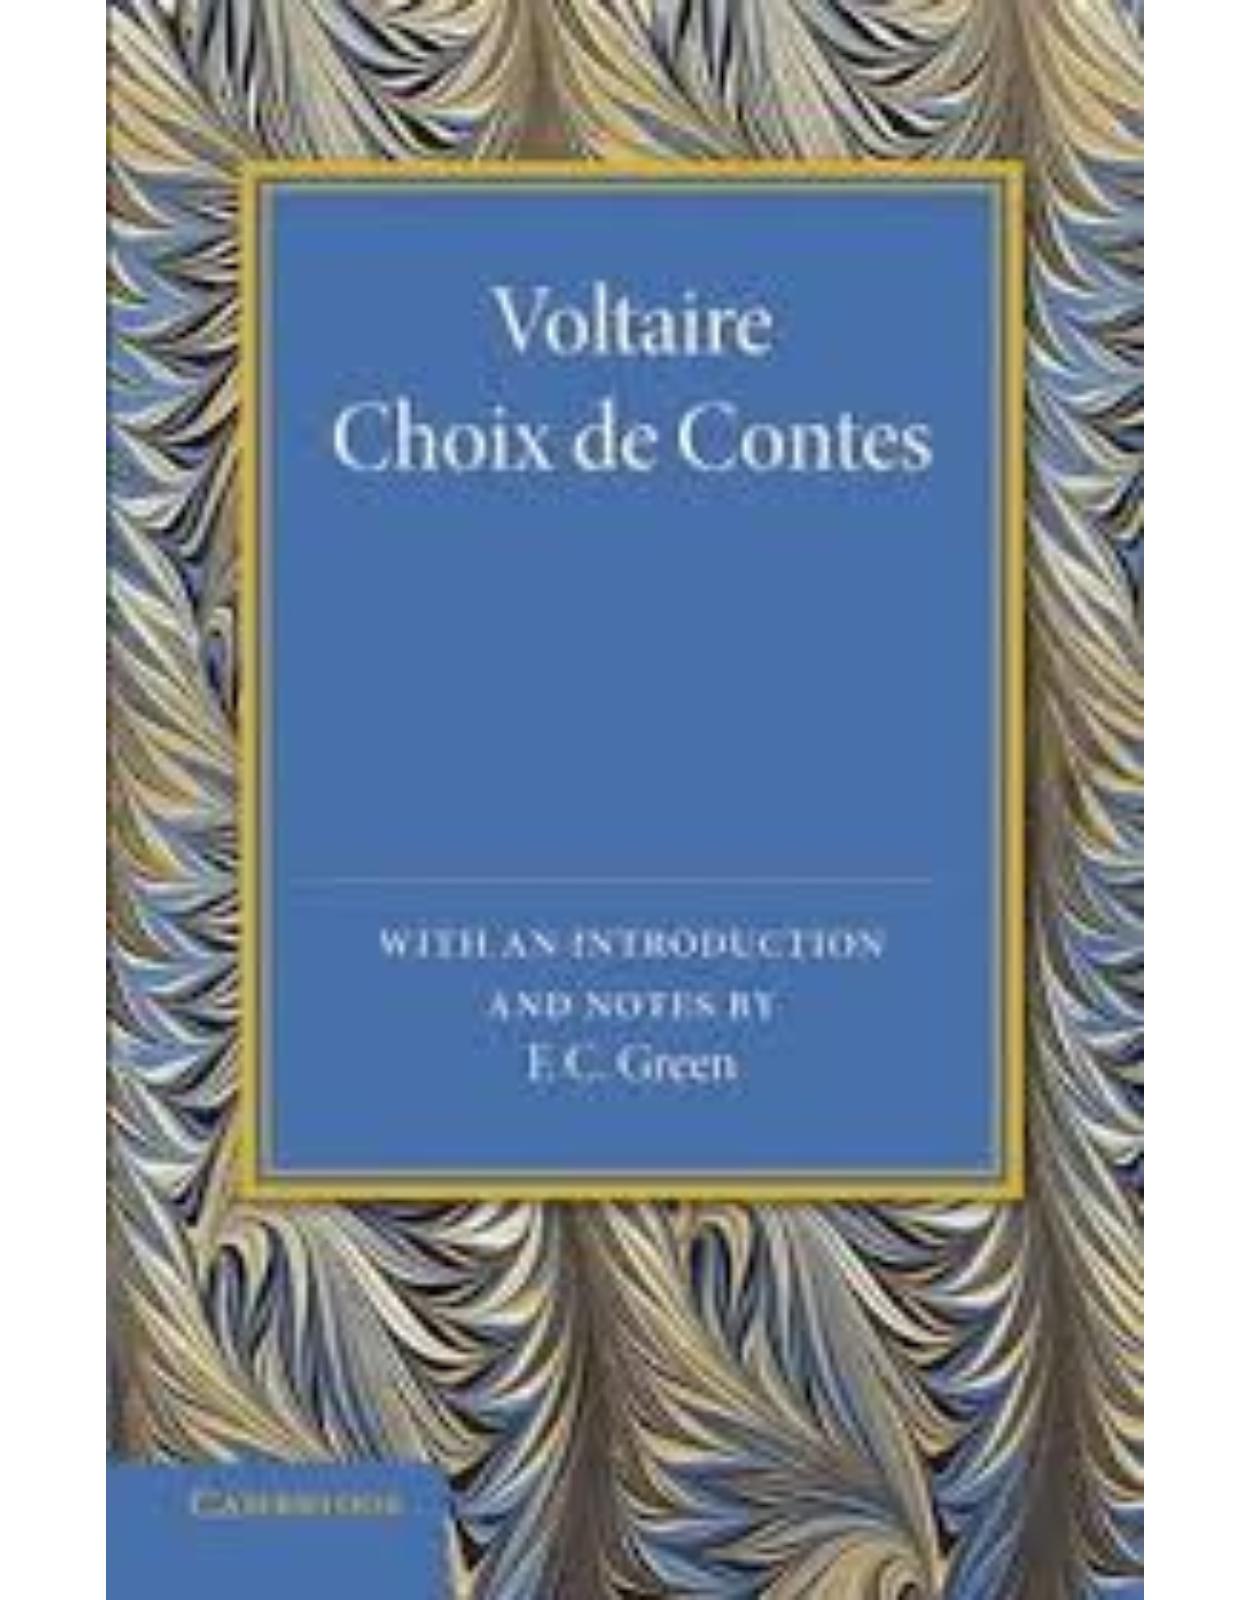 Voltaire: Choix de Contes